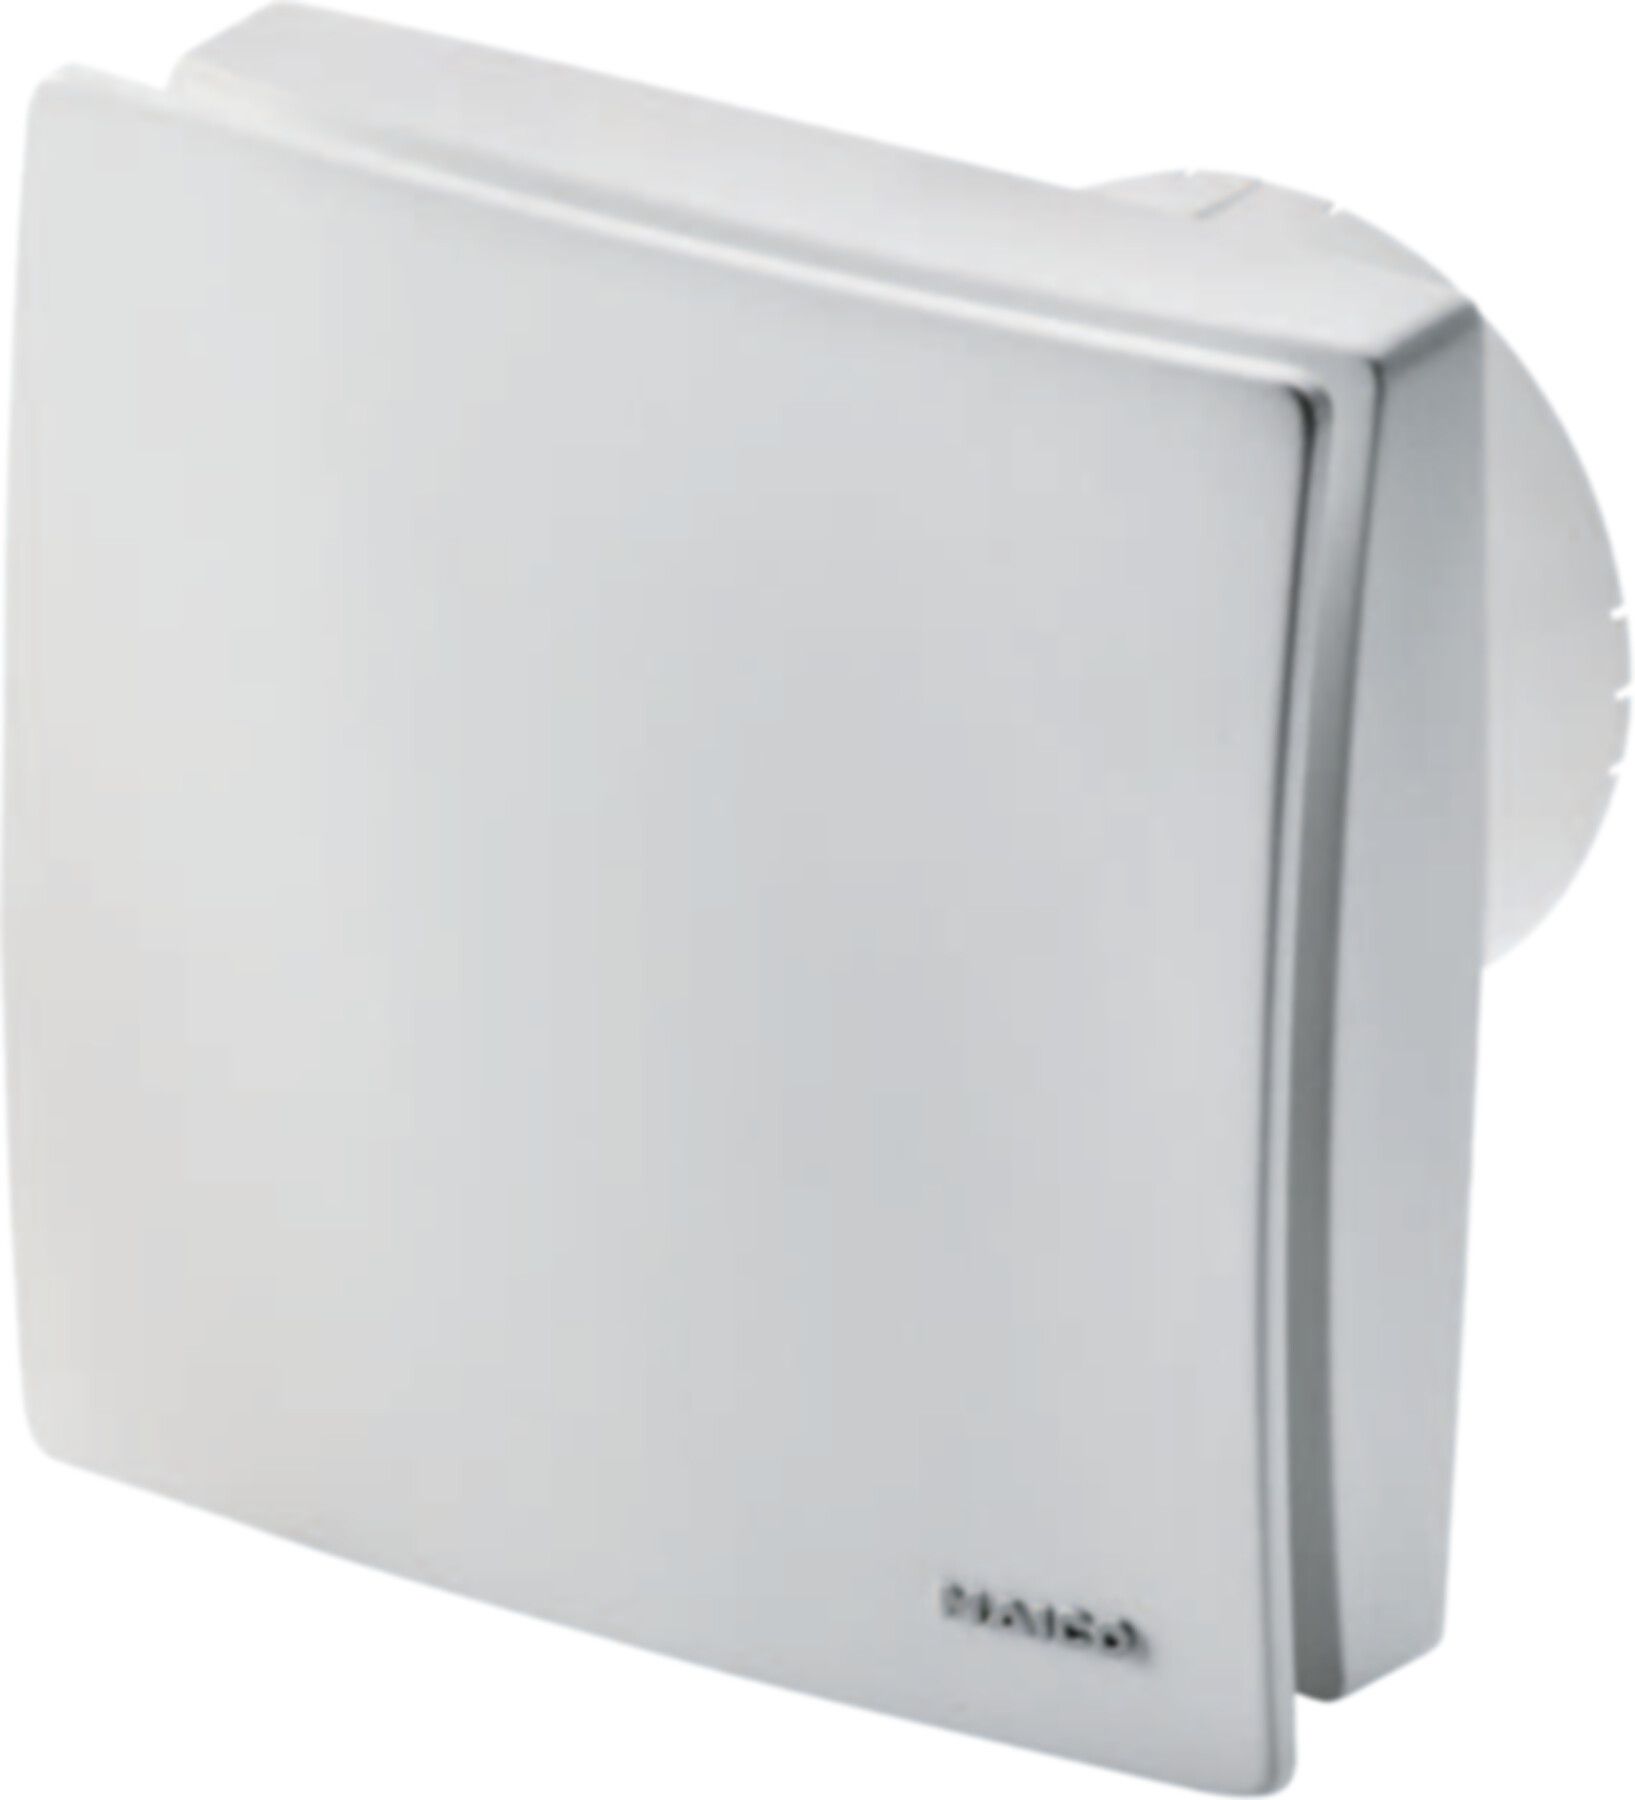 Bad / WC-Ventilatoren COMPETAIR Maico ECA 100 ipro KB